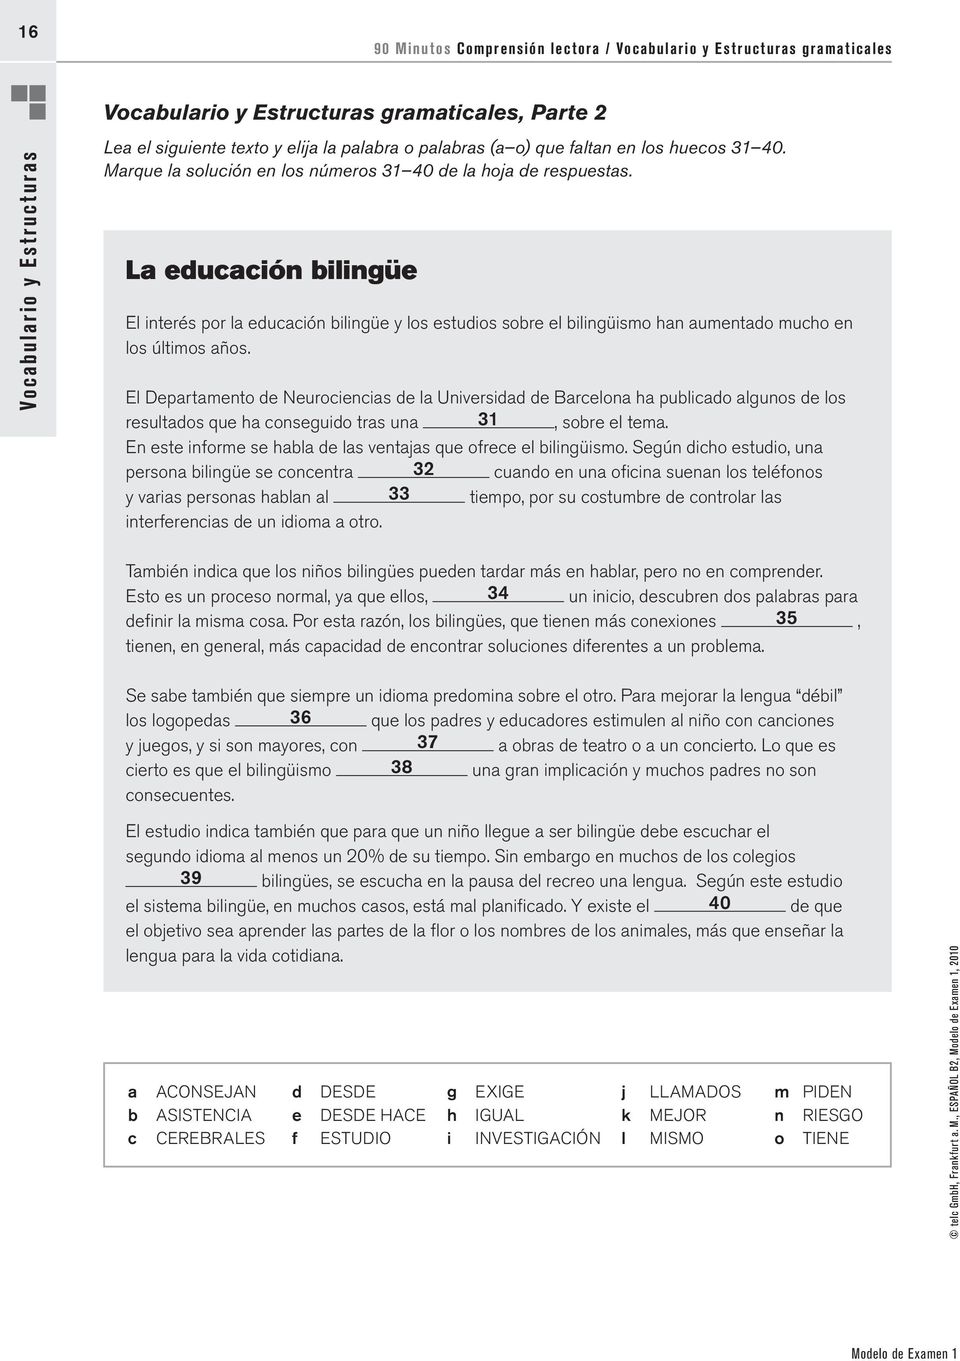 La educación bilingüe El interés por la educación bilingüe y los estudios sobre el bilingüismo han aumentado mucho en los últimos años.